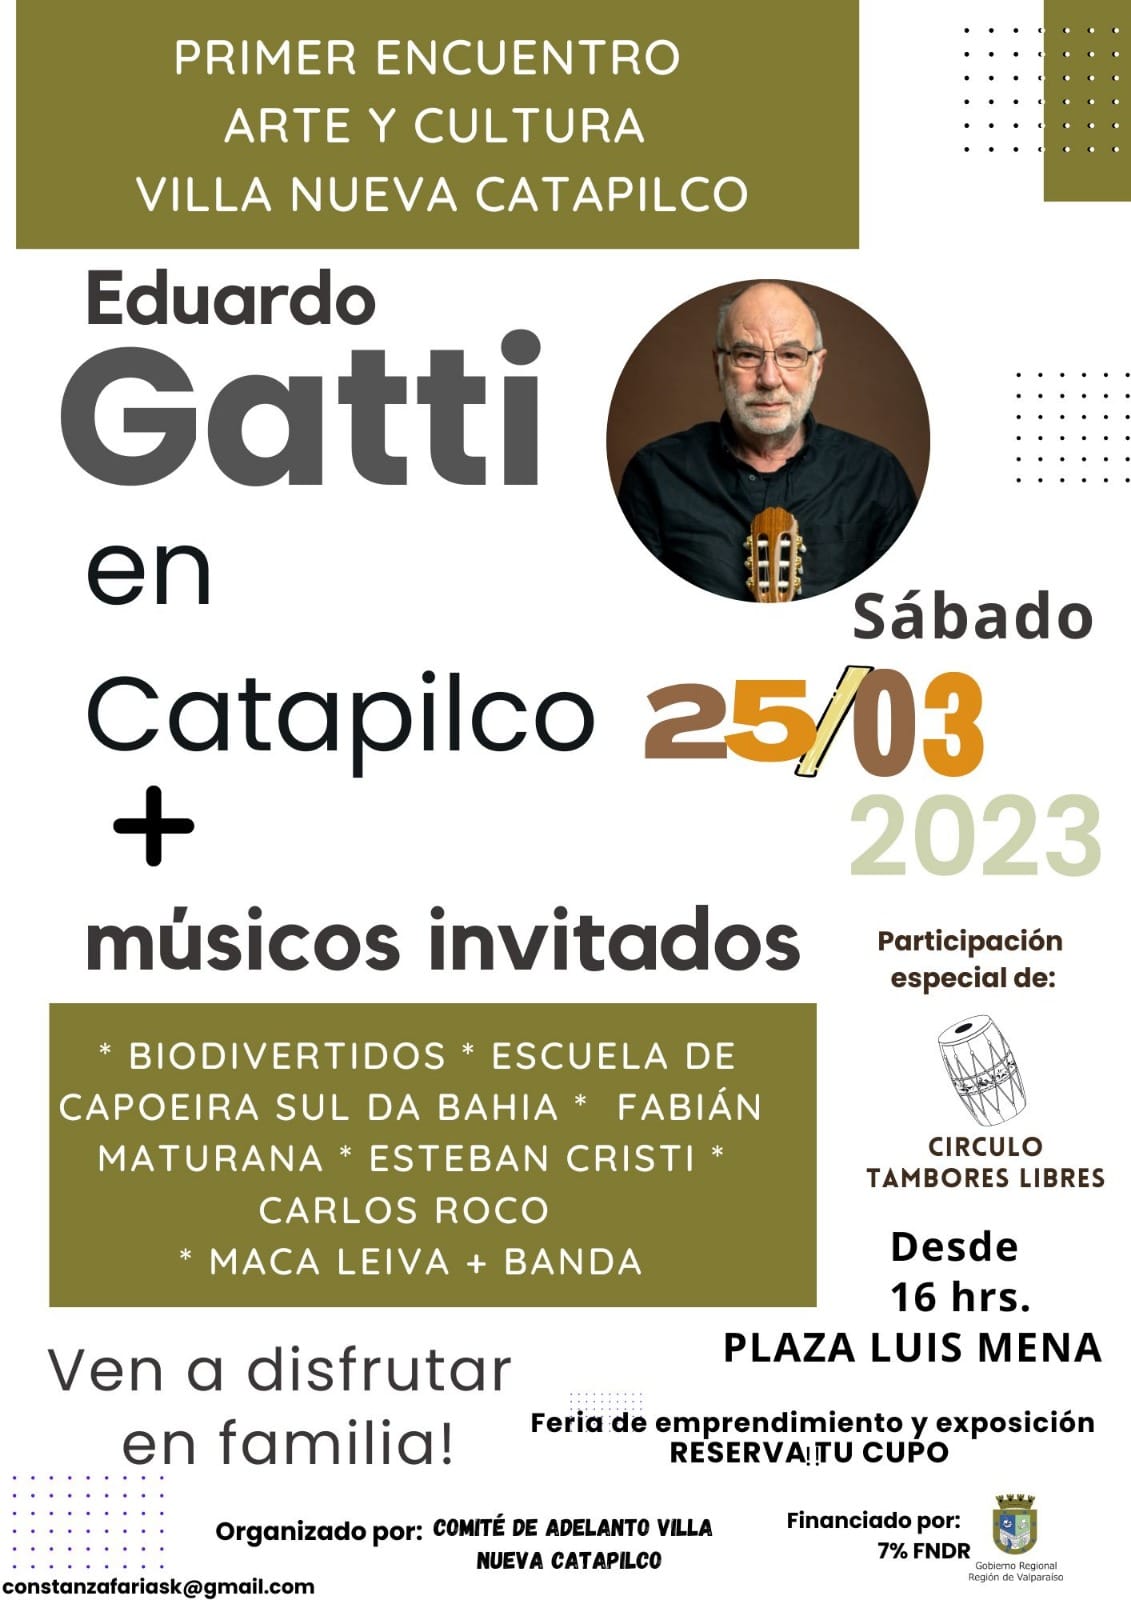 Eduardo Gatti será parte del primer encuentro de arte y cultura Villa Nueva Catapilco